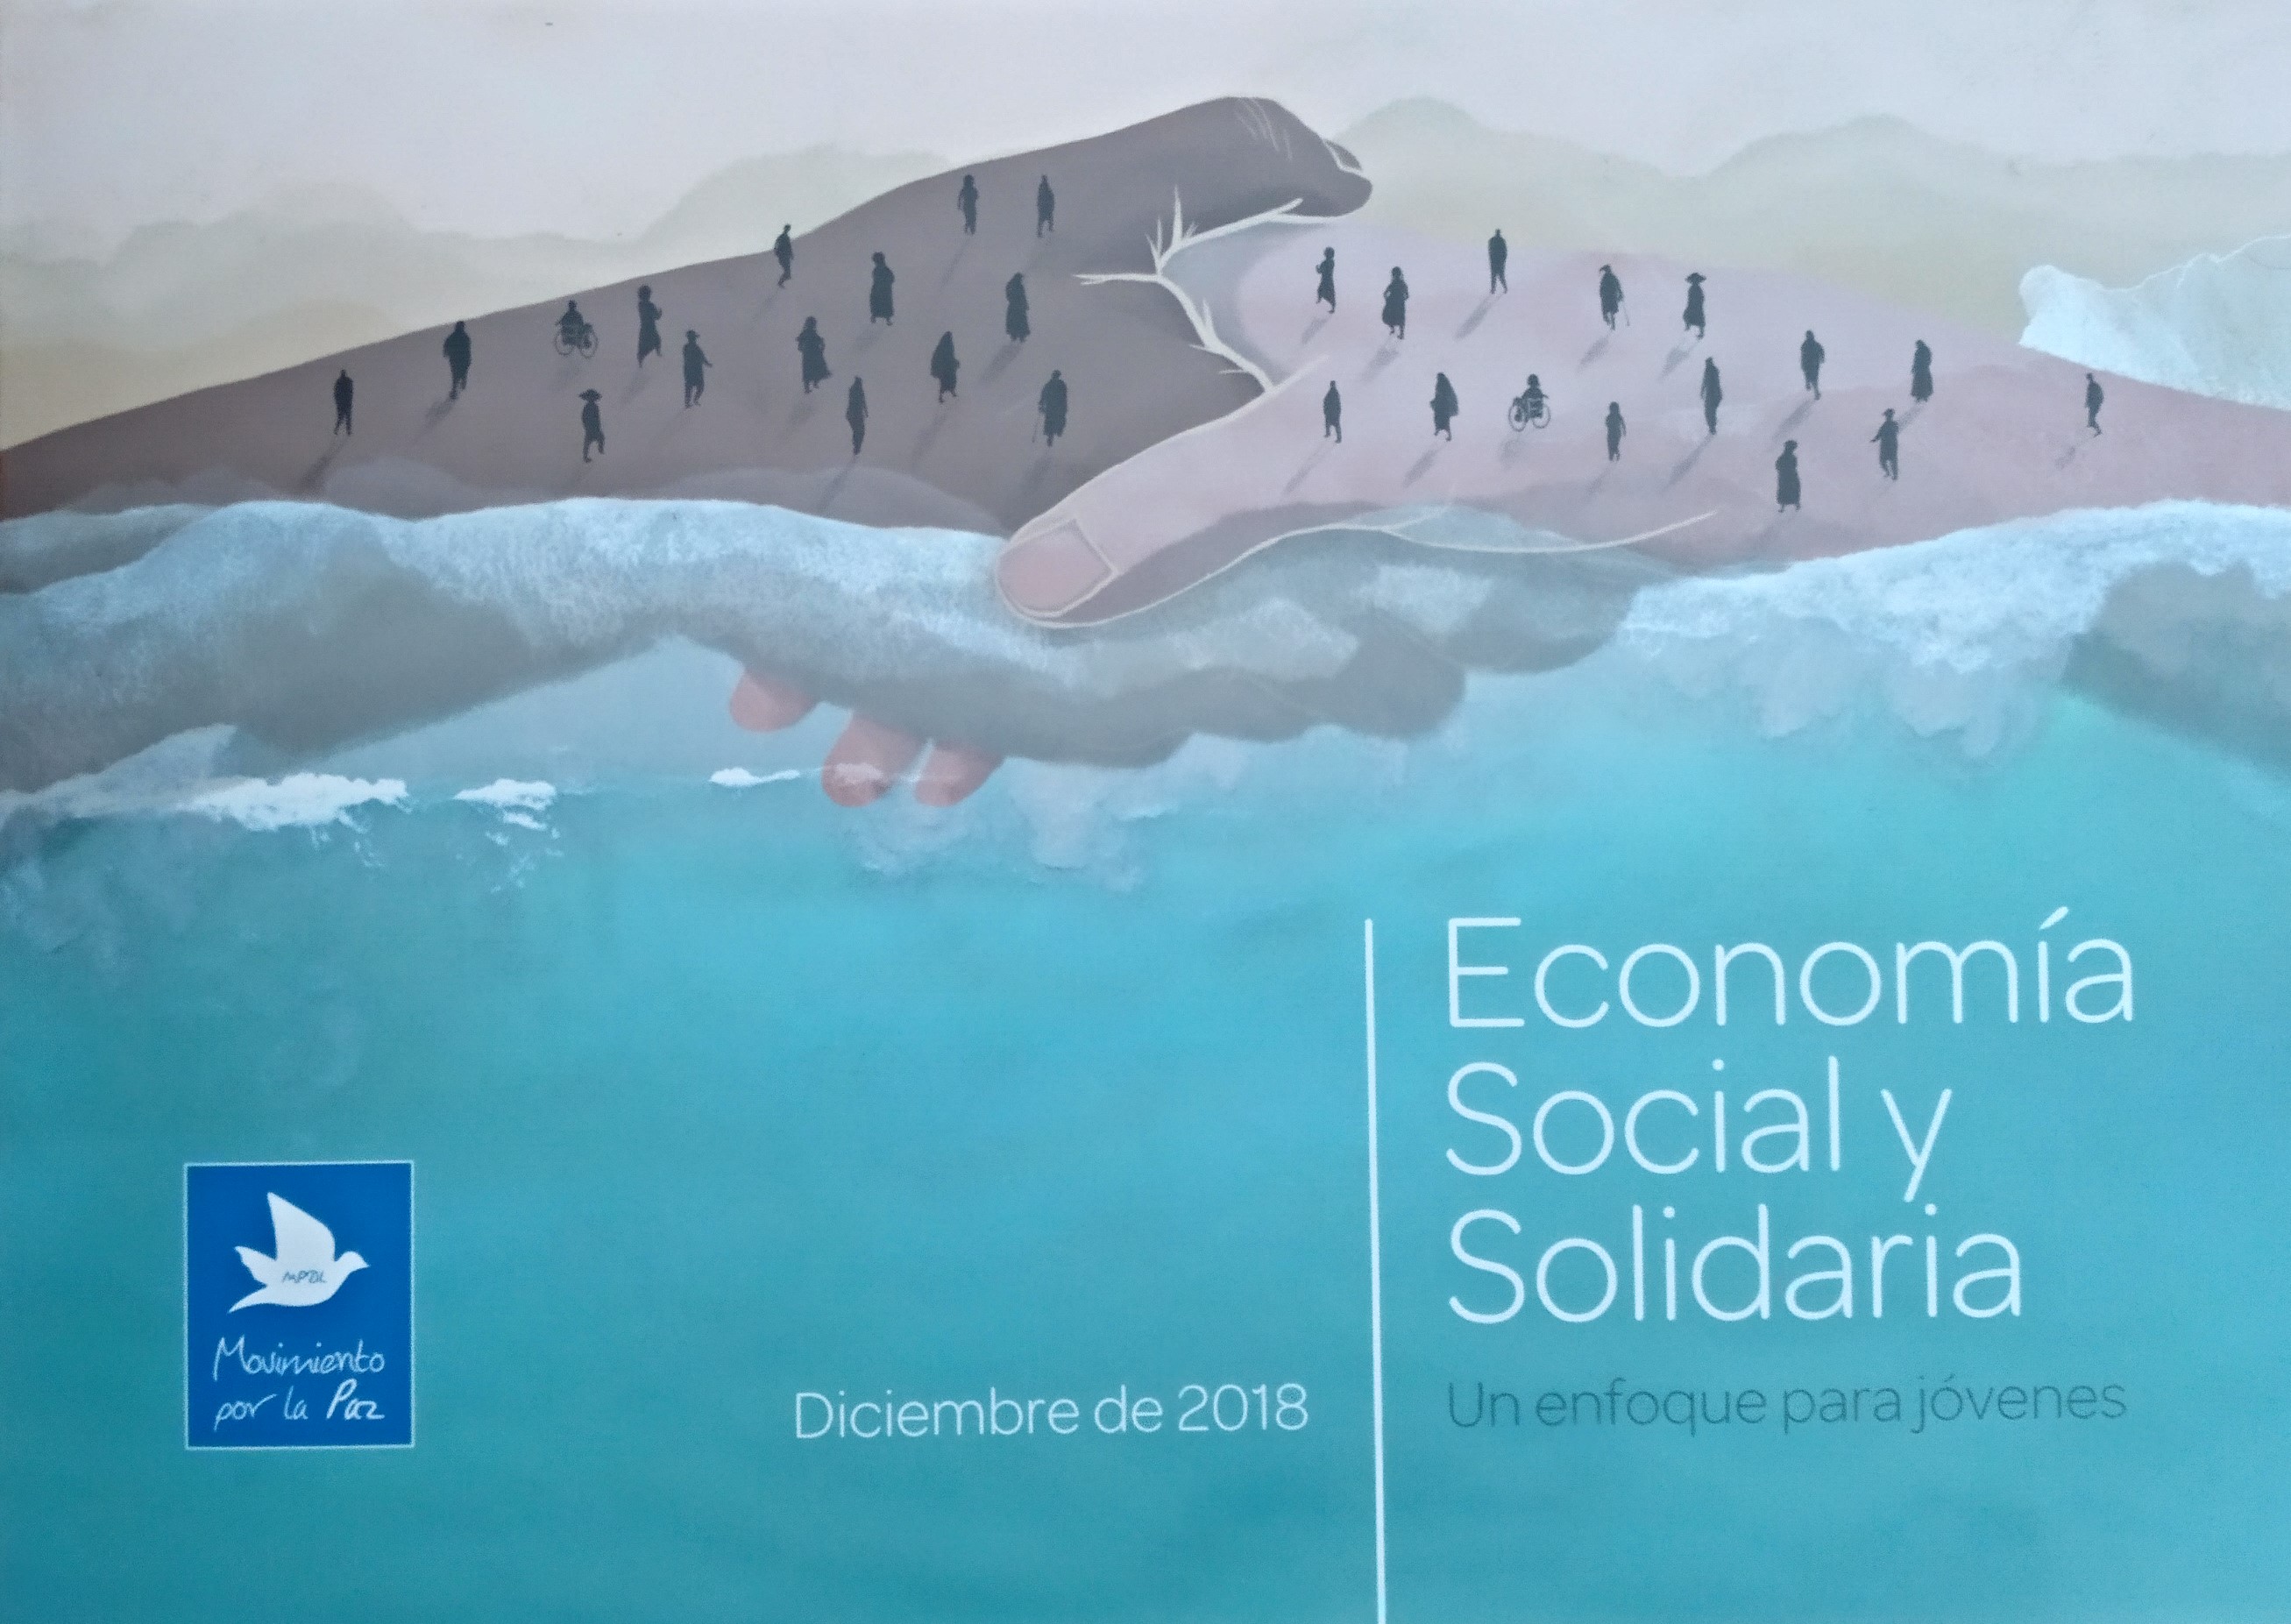 Manual de Economía Social y Solidaria.